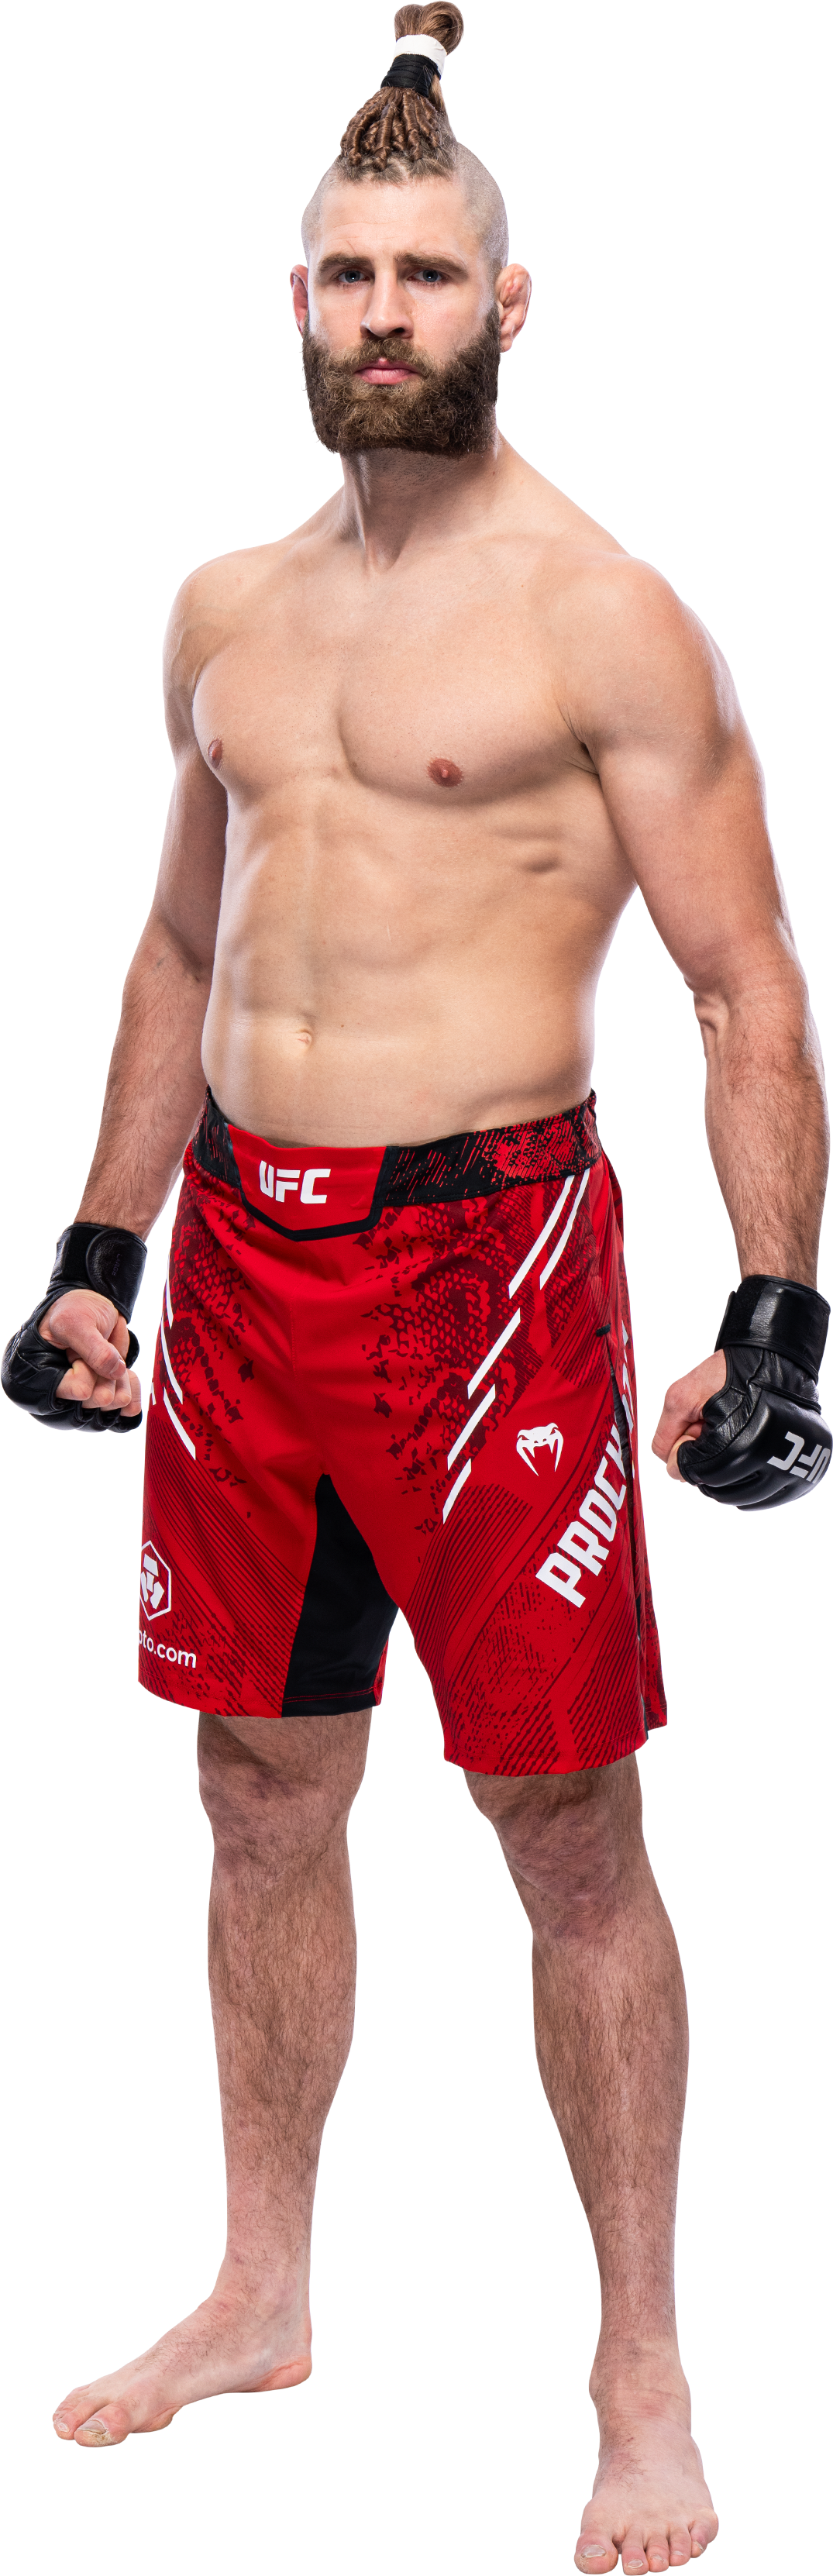 ドミニク・レイエス vs. イリー・プロハースカ | ファイトカード | UFC 